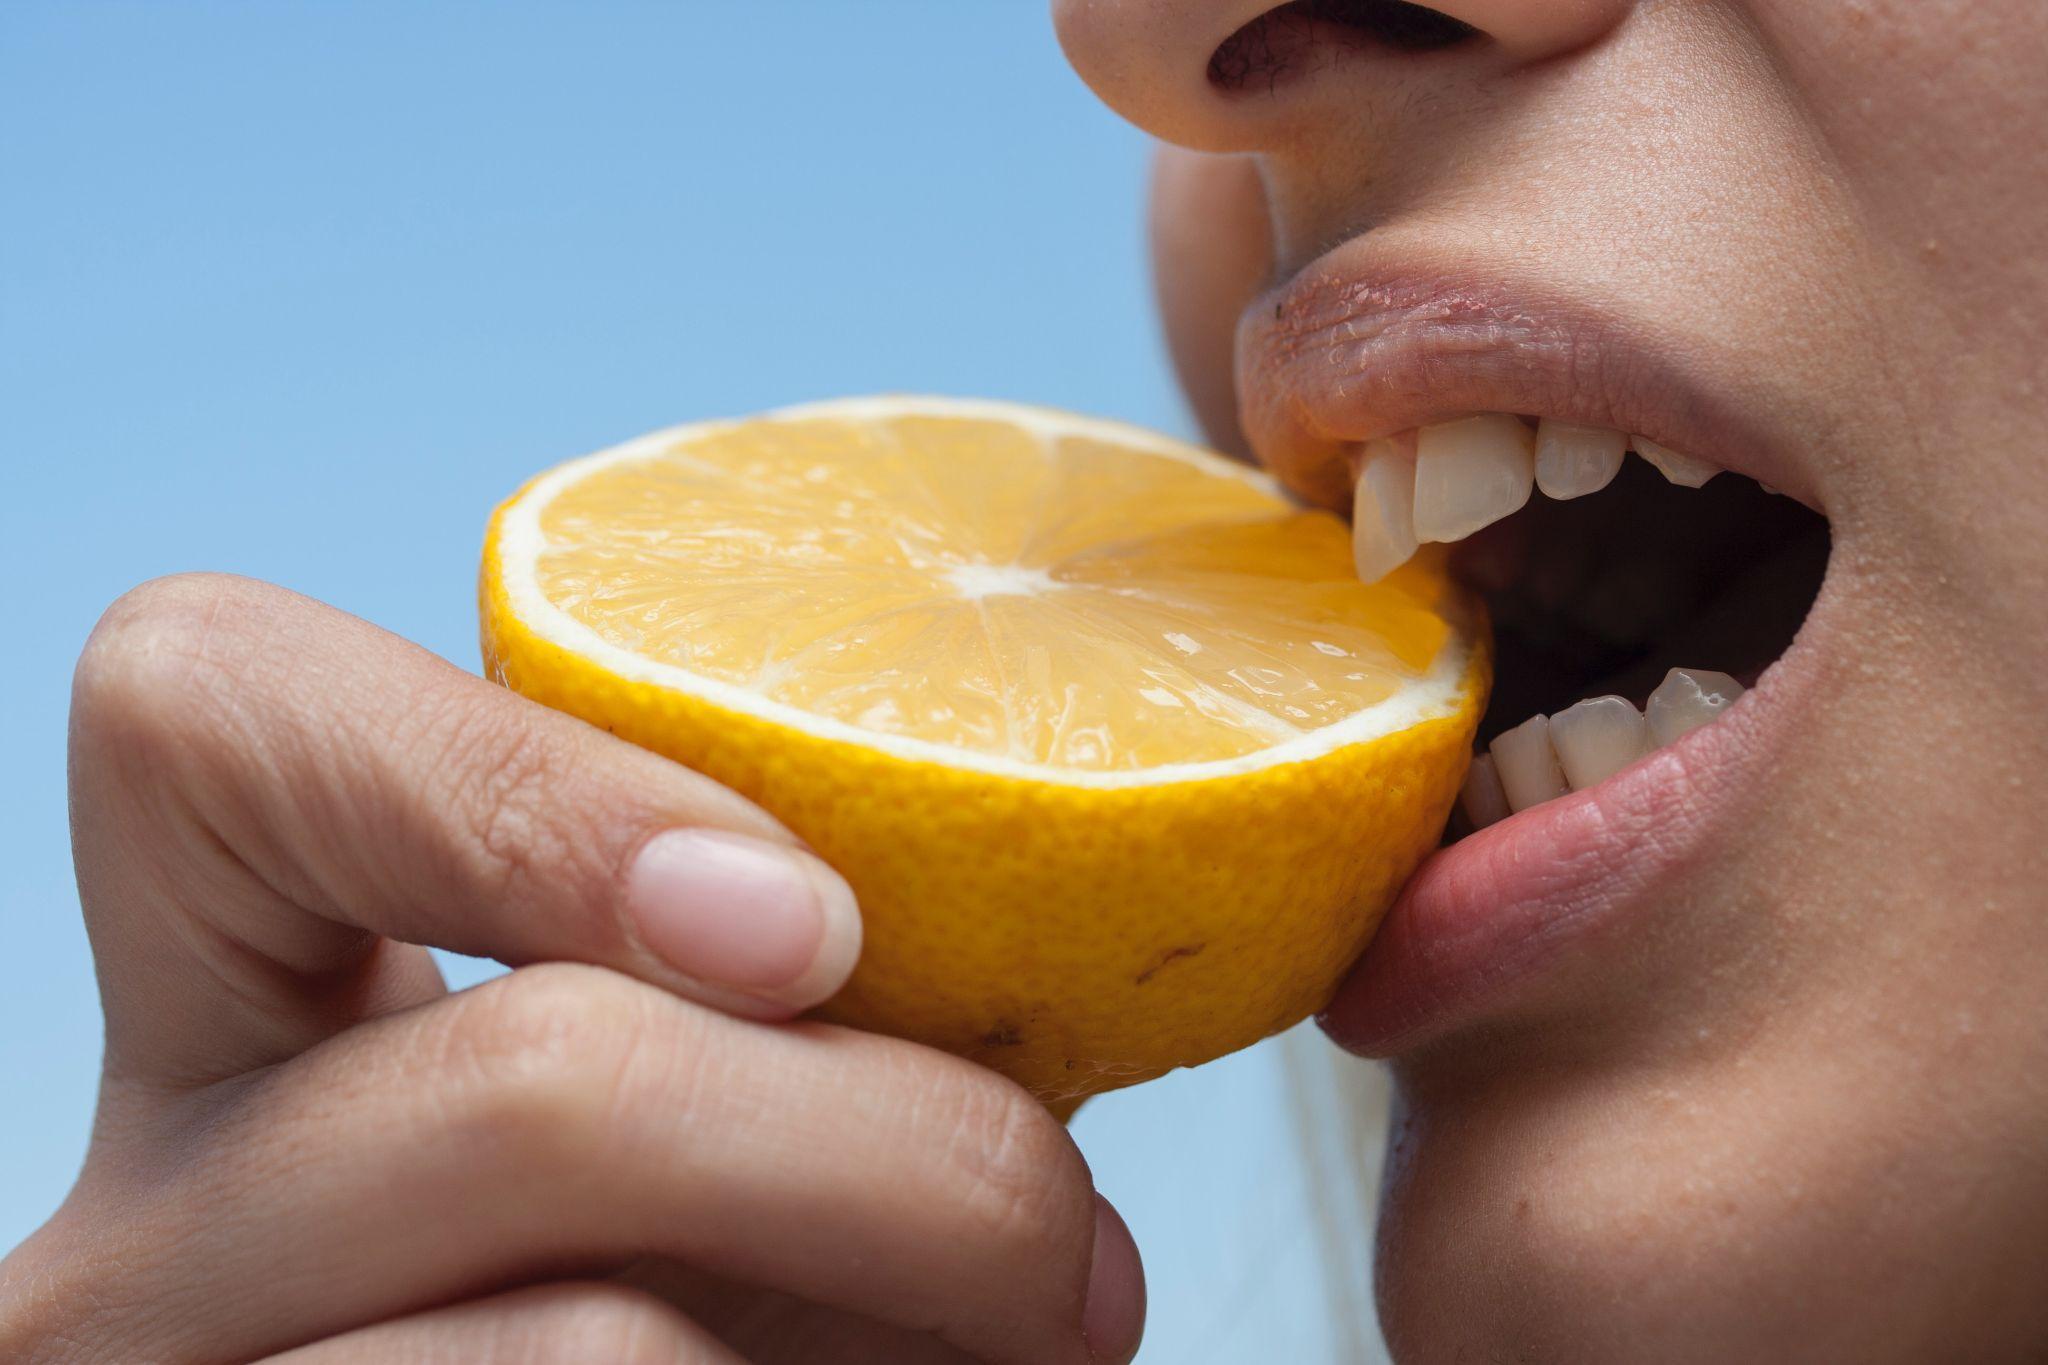 Woman biting half a lemon.